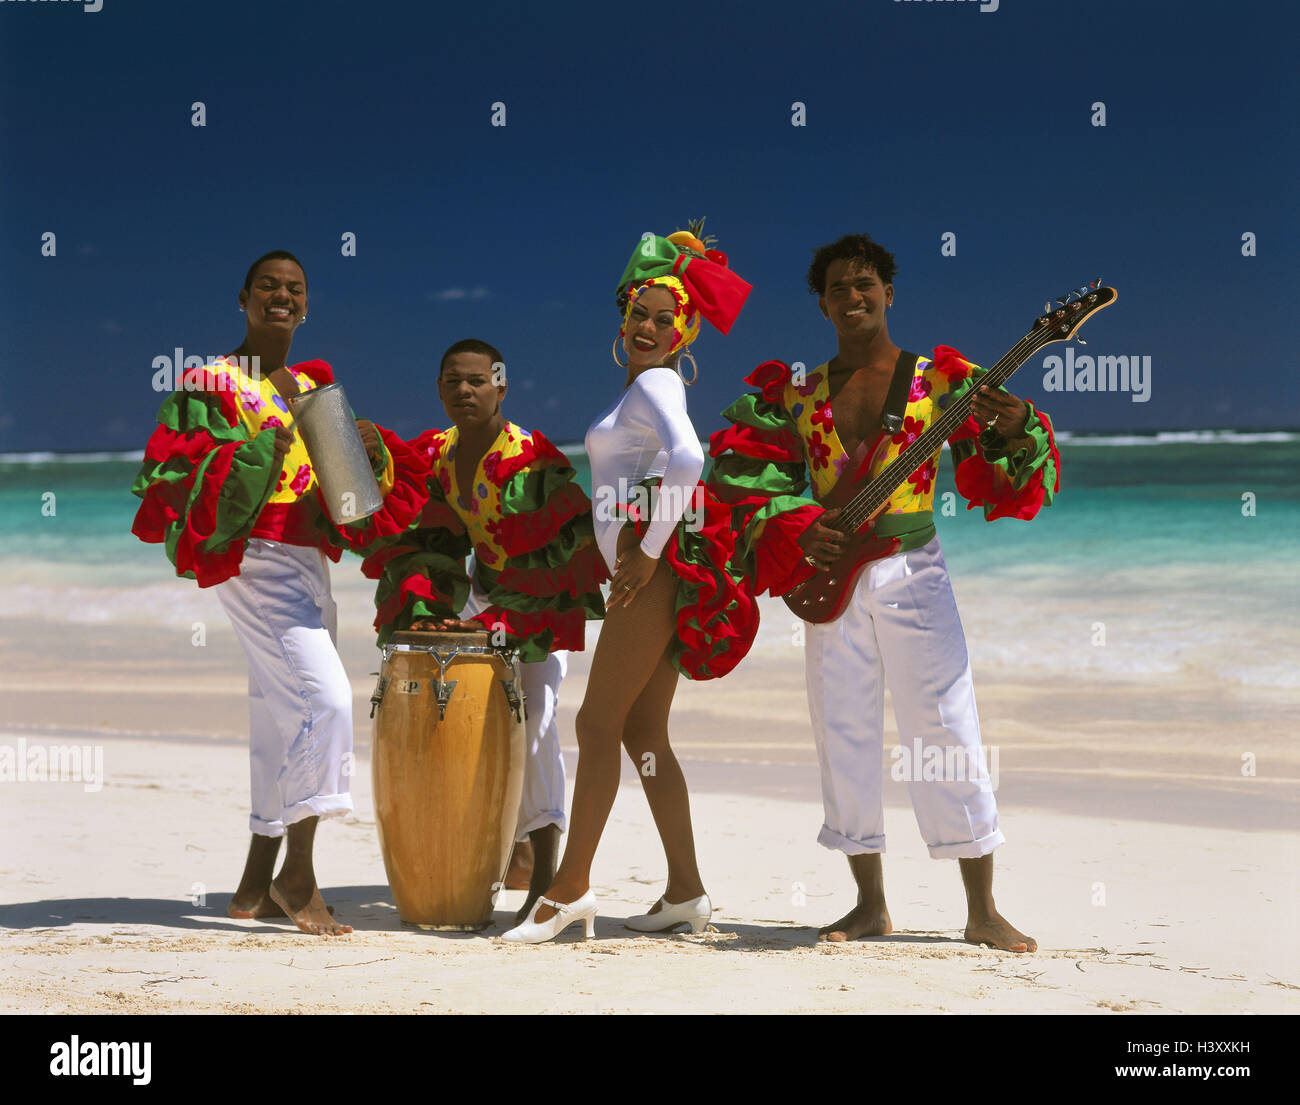 La République dominicaine, Punta Cana, Bavaro Beach Resort, plage de sable, musicien, danseur, geste, plage, sable, homme, femme, costume, tambour, musique, musicien, chanteur, musicien, tourisme, instruments, instruments de musique Banque D'Images